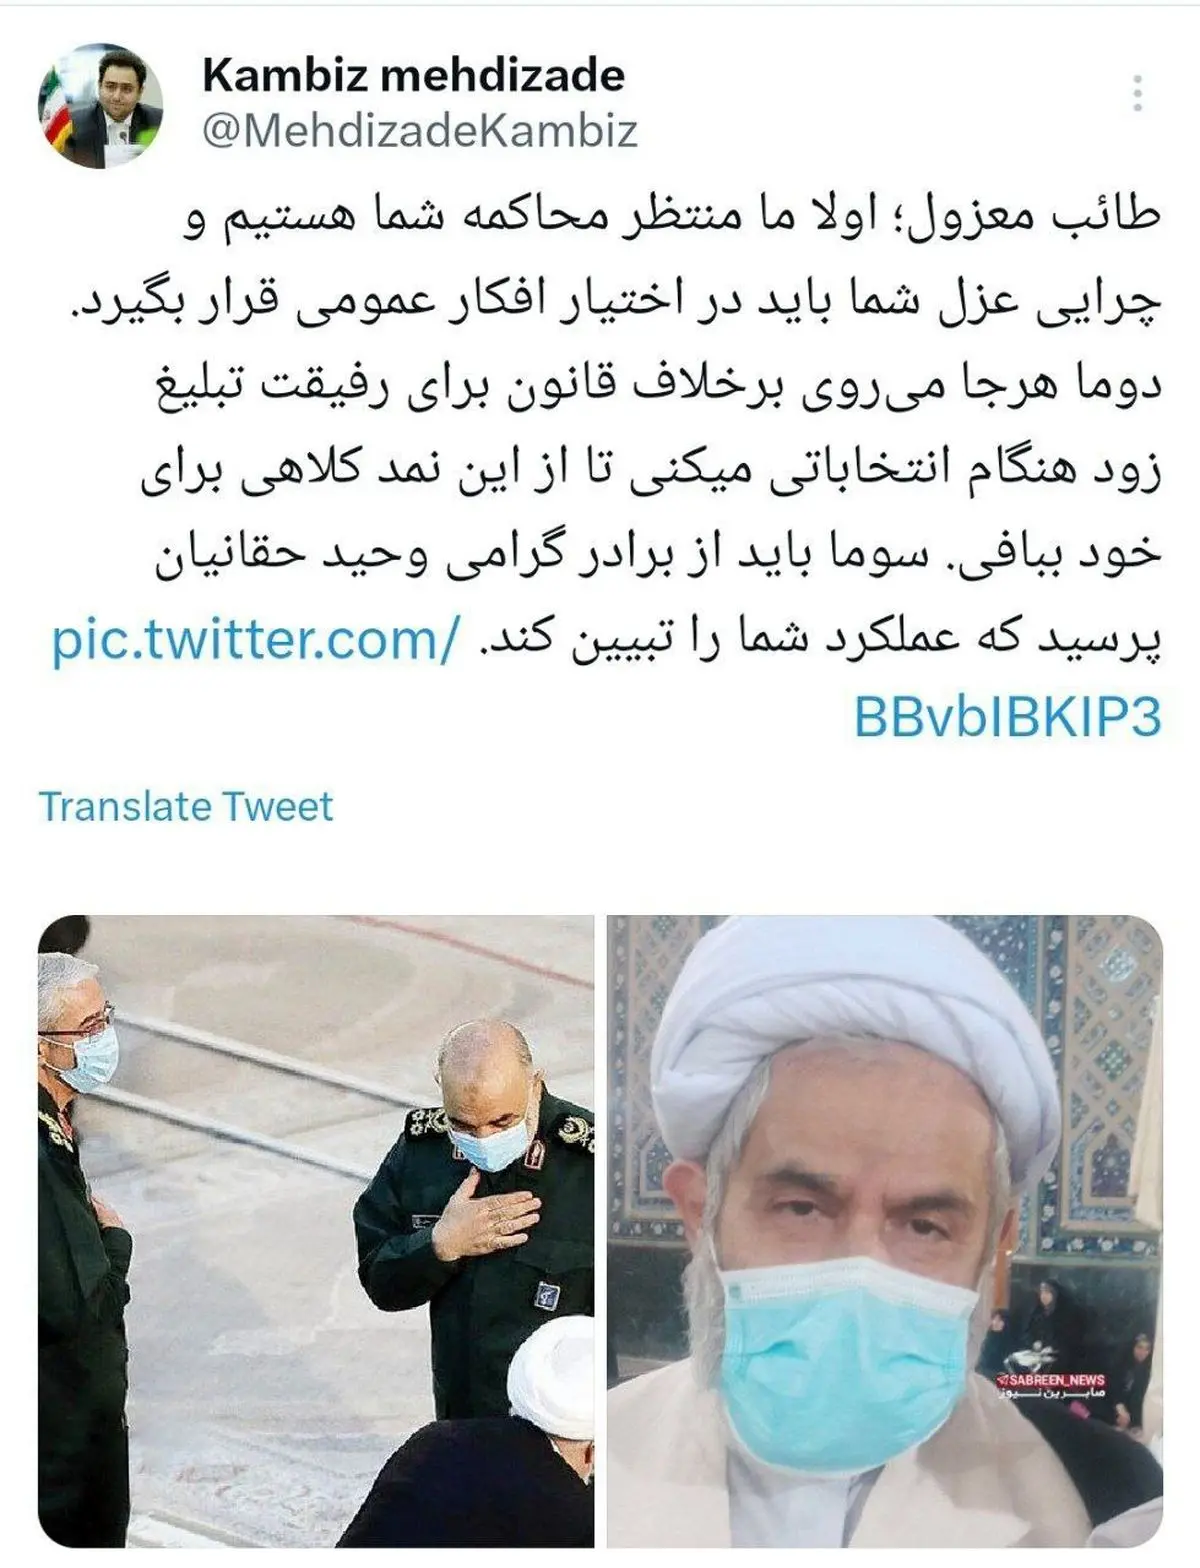  دفاع داماد روحانی از پدرزن: منتظر محاکمه تو هستیم